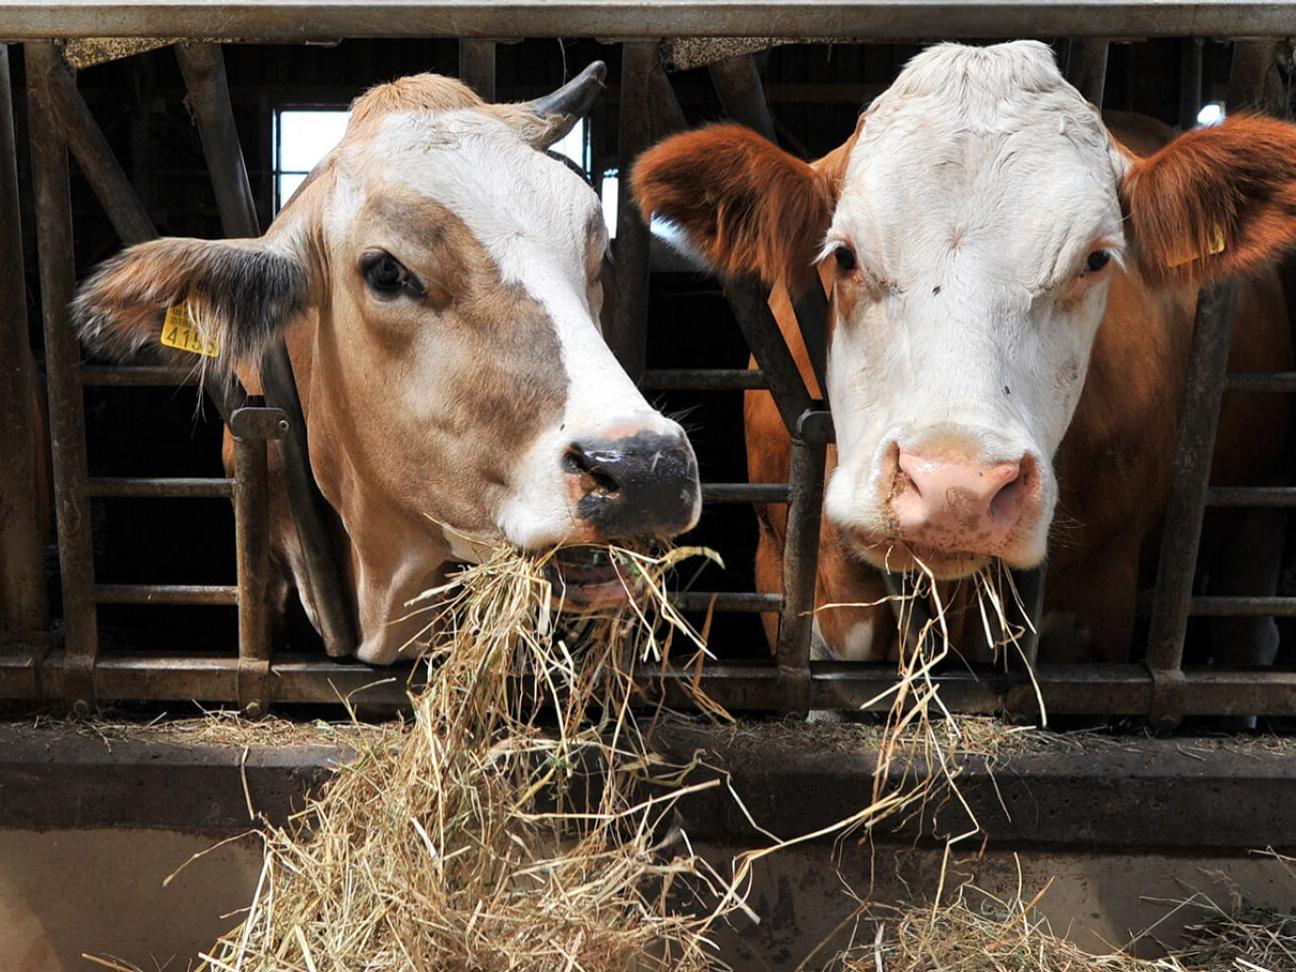 zwei Kühe in einem offenen Stall, Recycling von Abfällen in der tierverarbeitenden Industrie